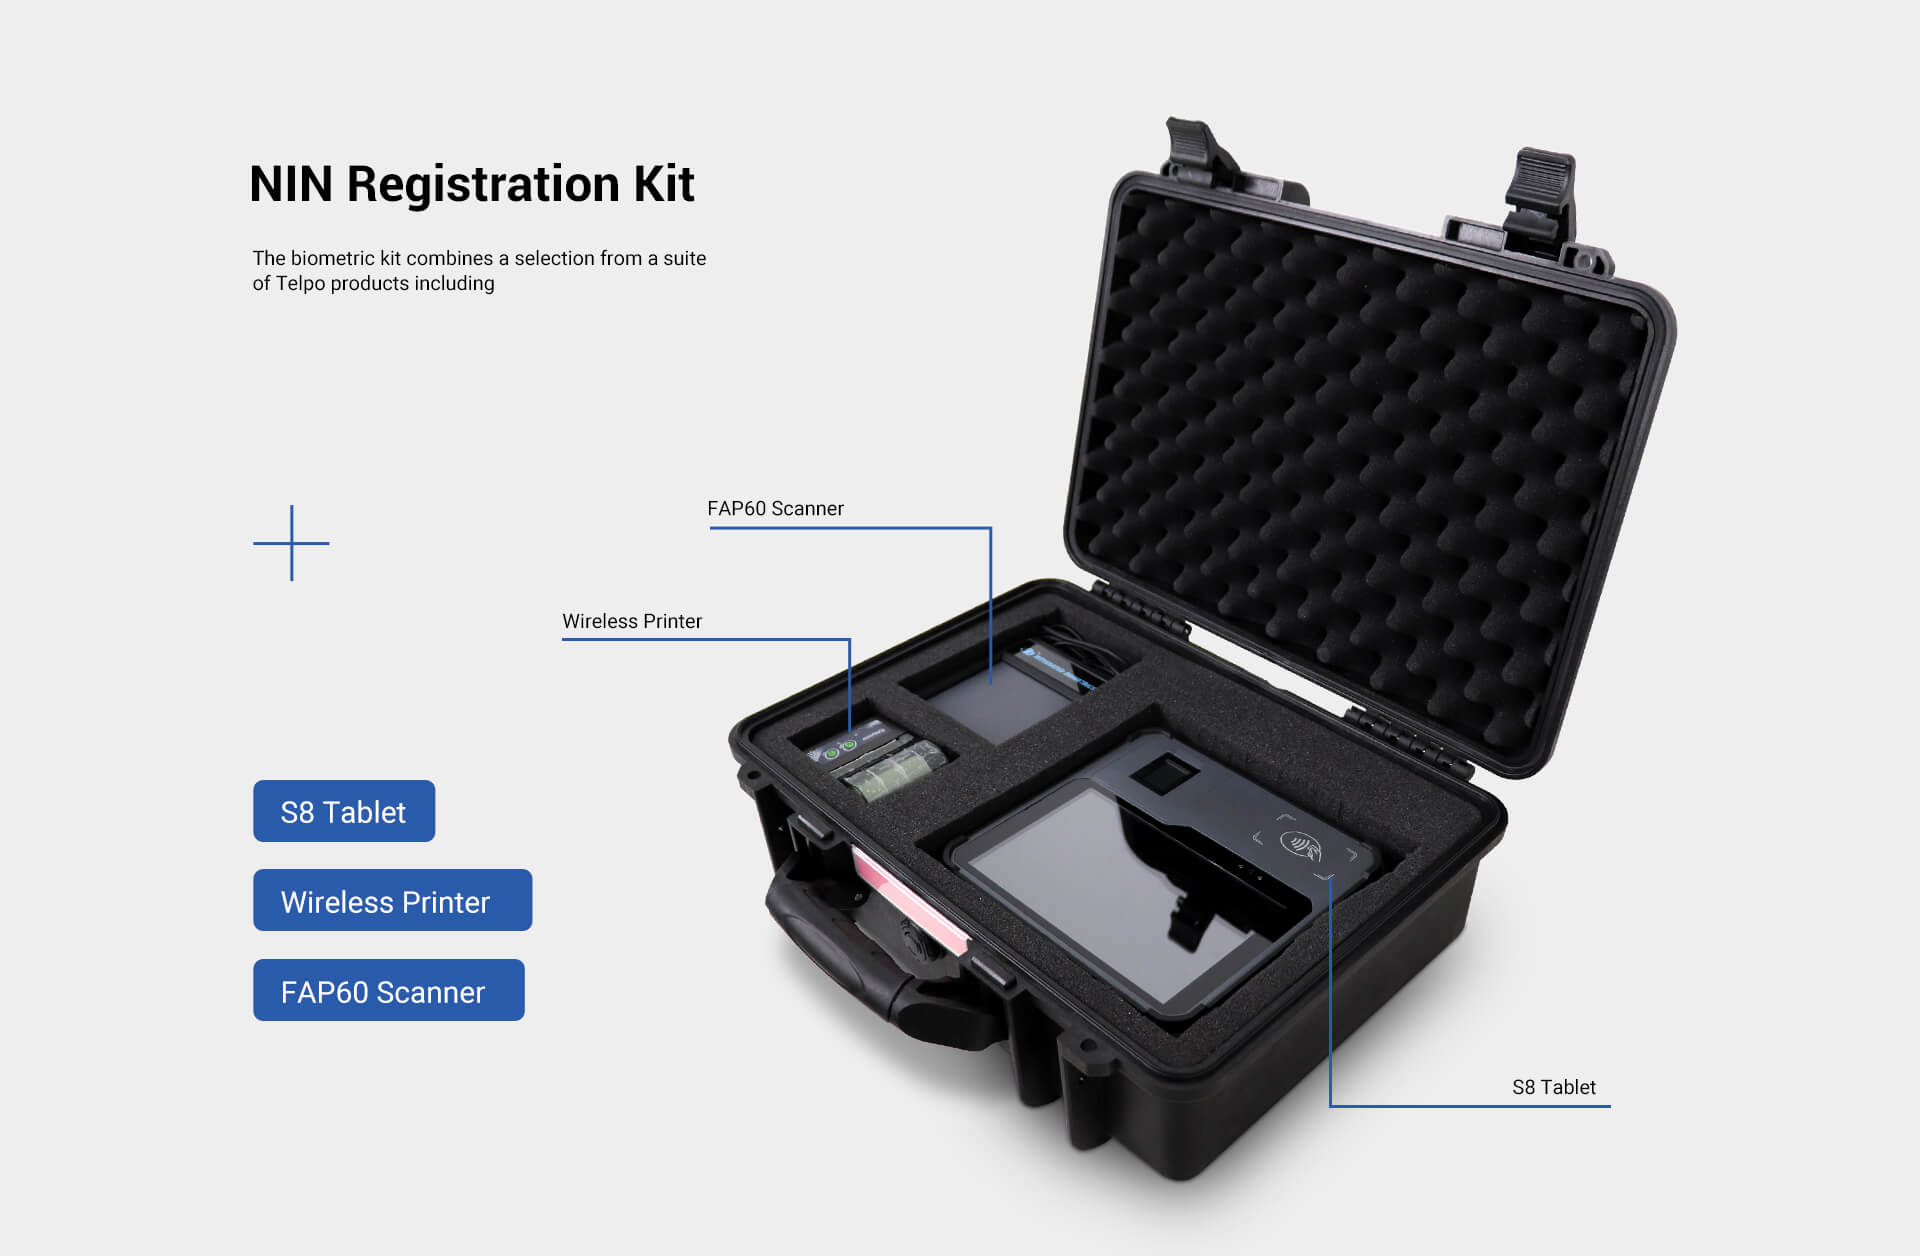 Biometric fingerprint tablet for NIN registration kit